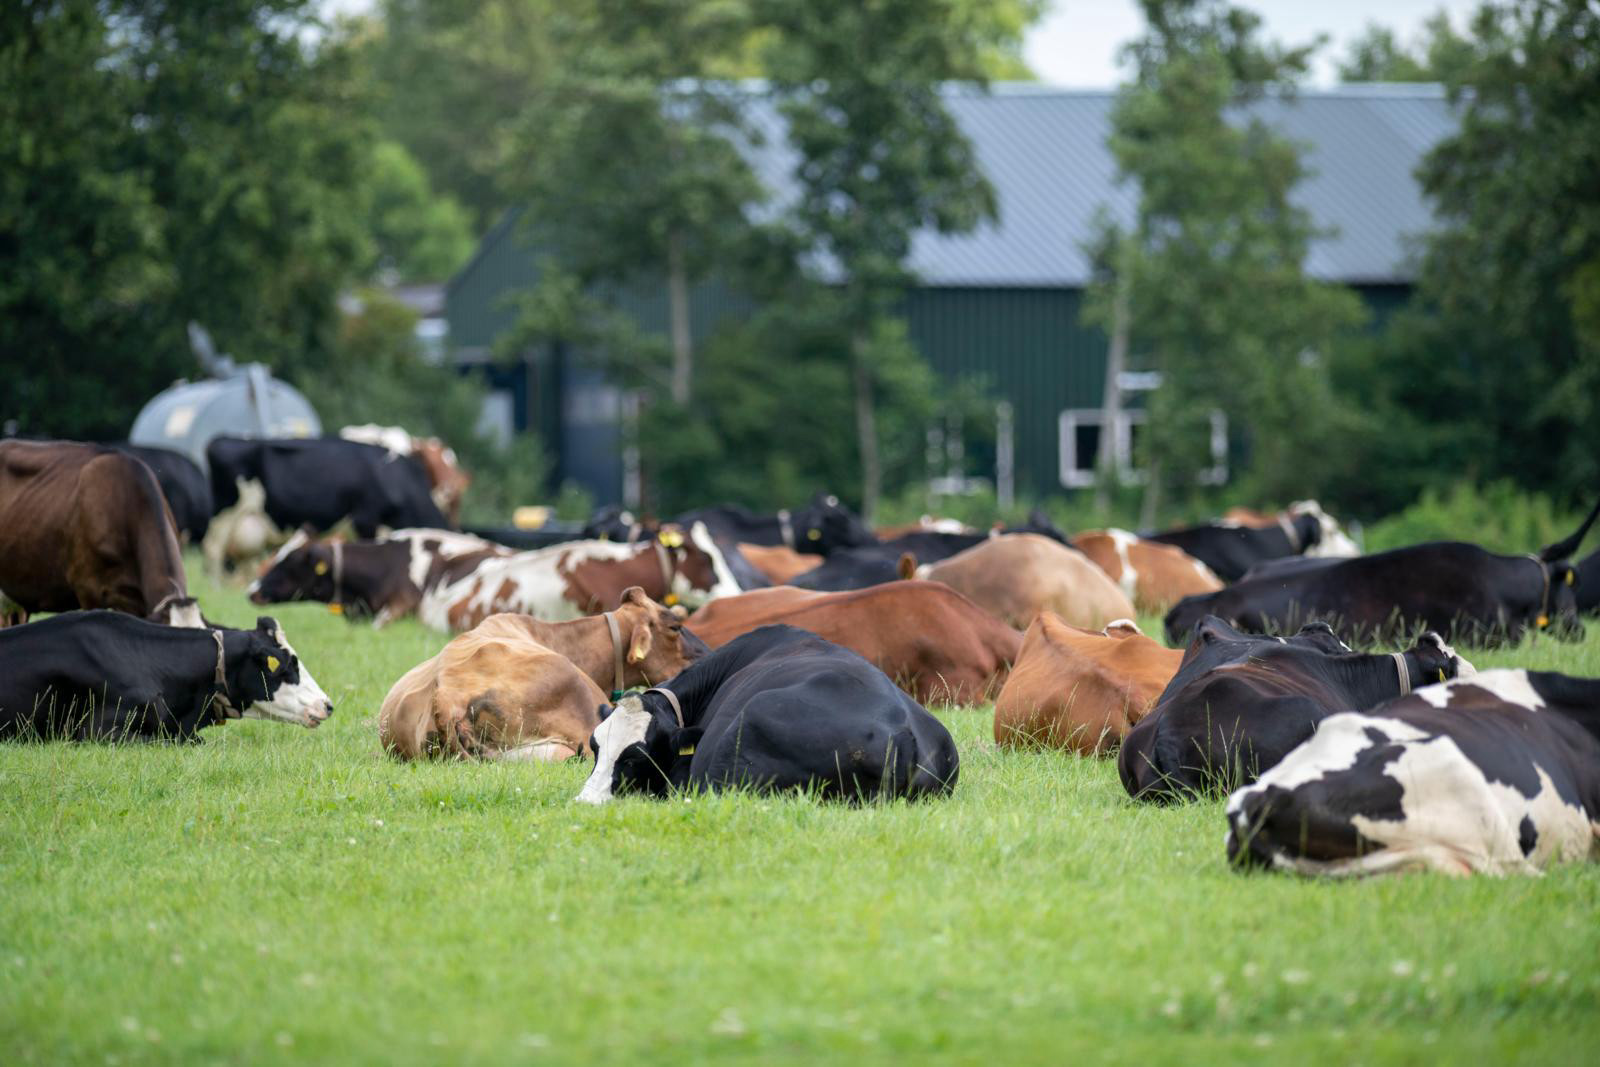 Koeien zijn echte  kuddedieren: het  liefst doen ze alles  samen, ook liggen  herkauwen